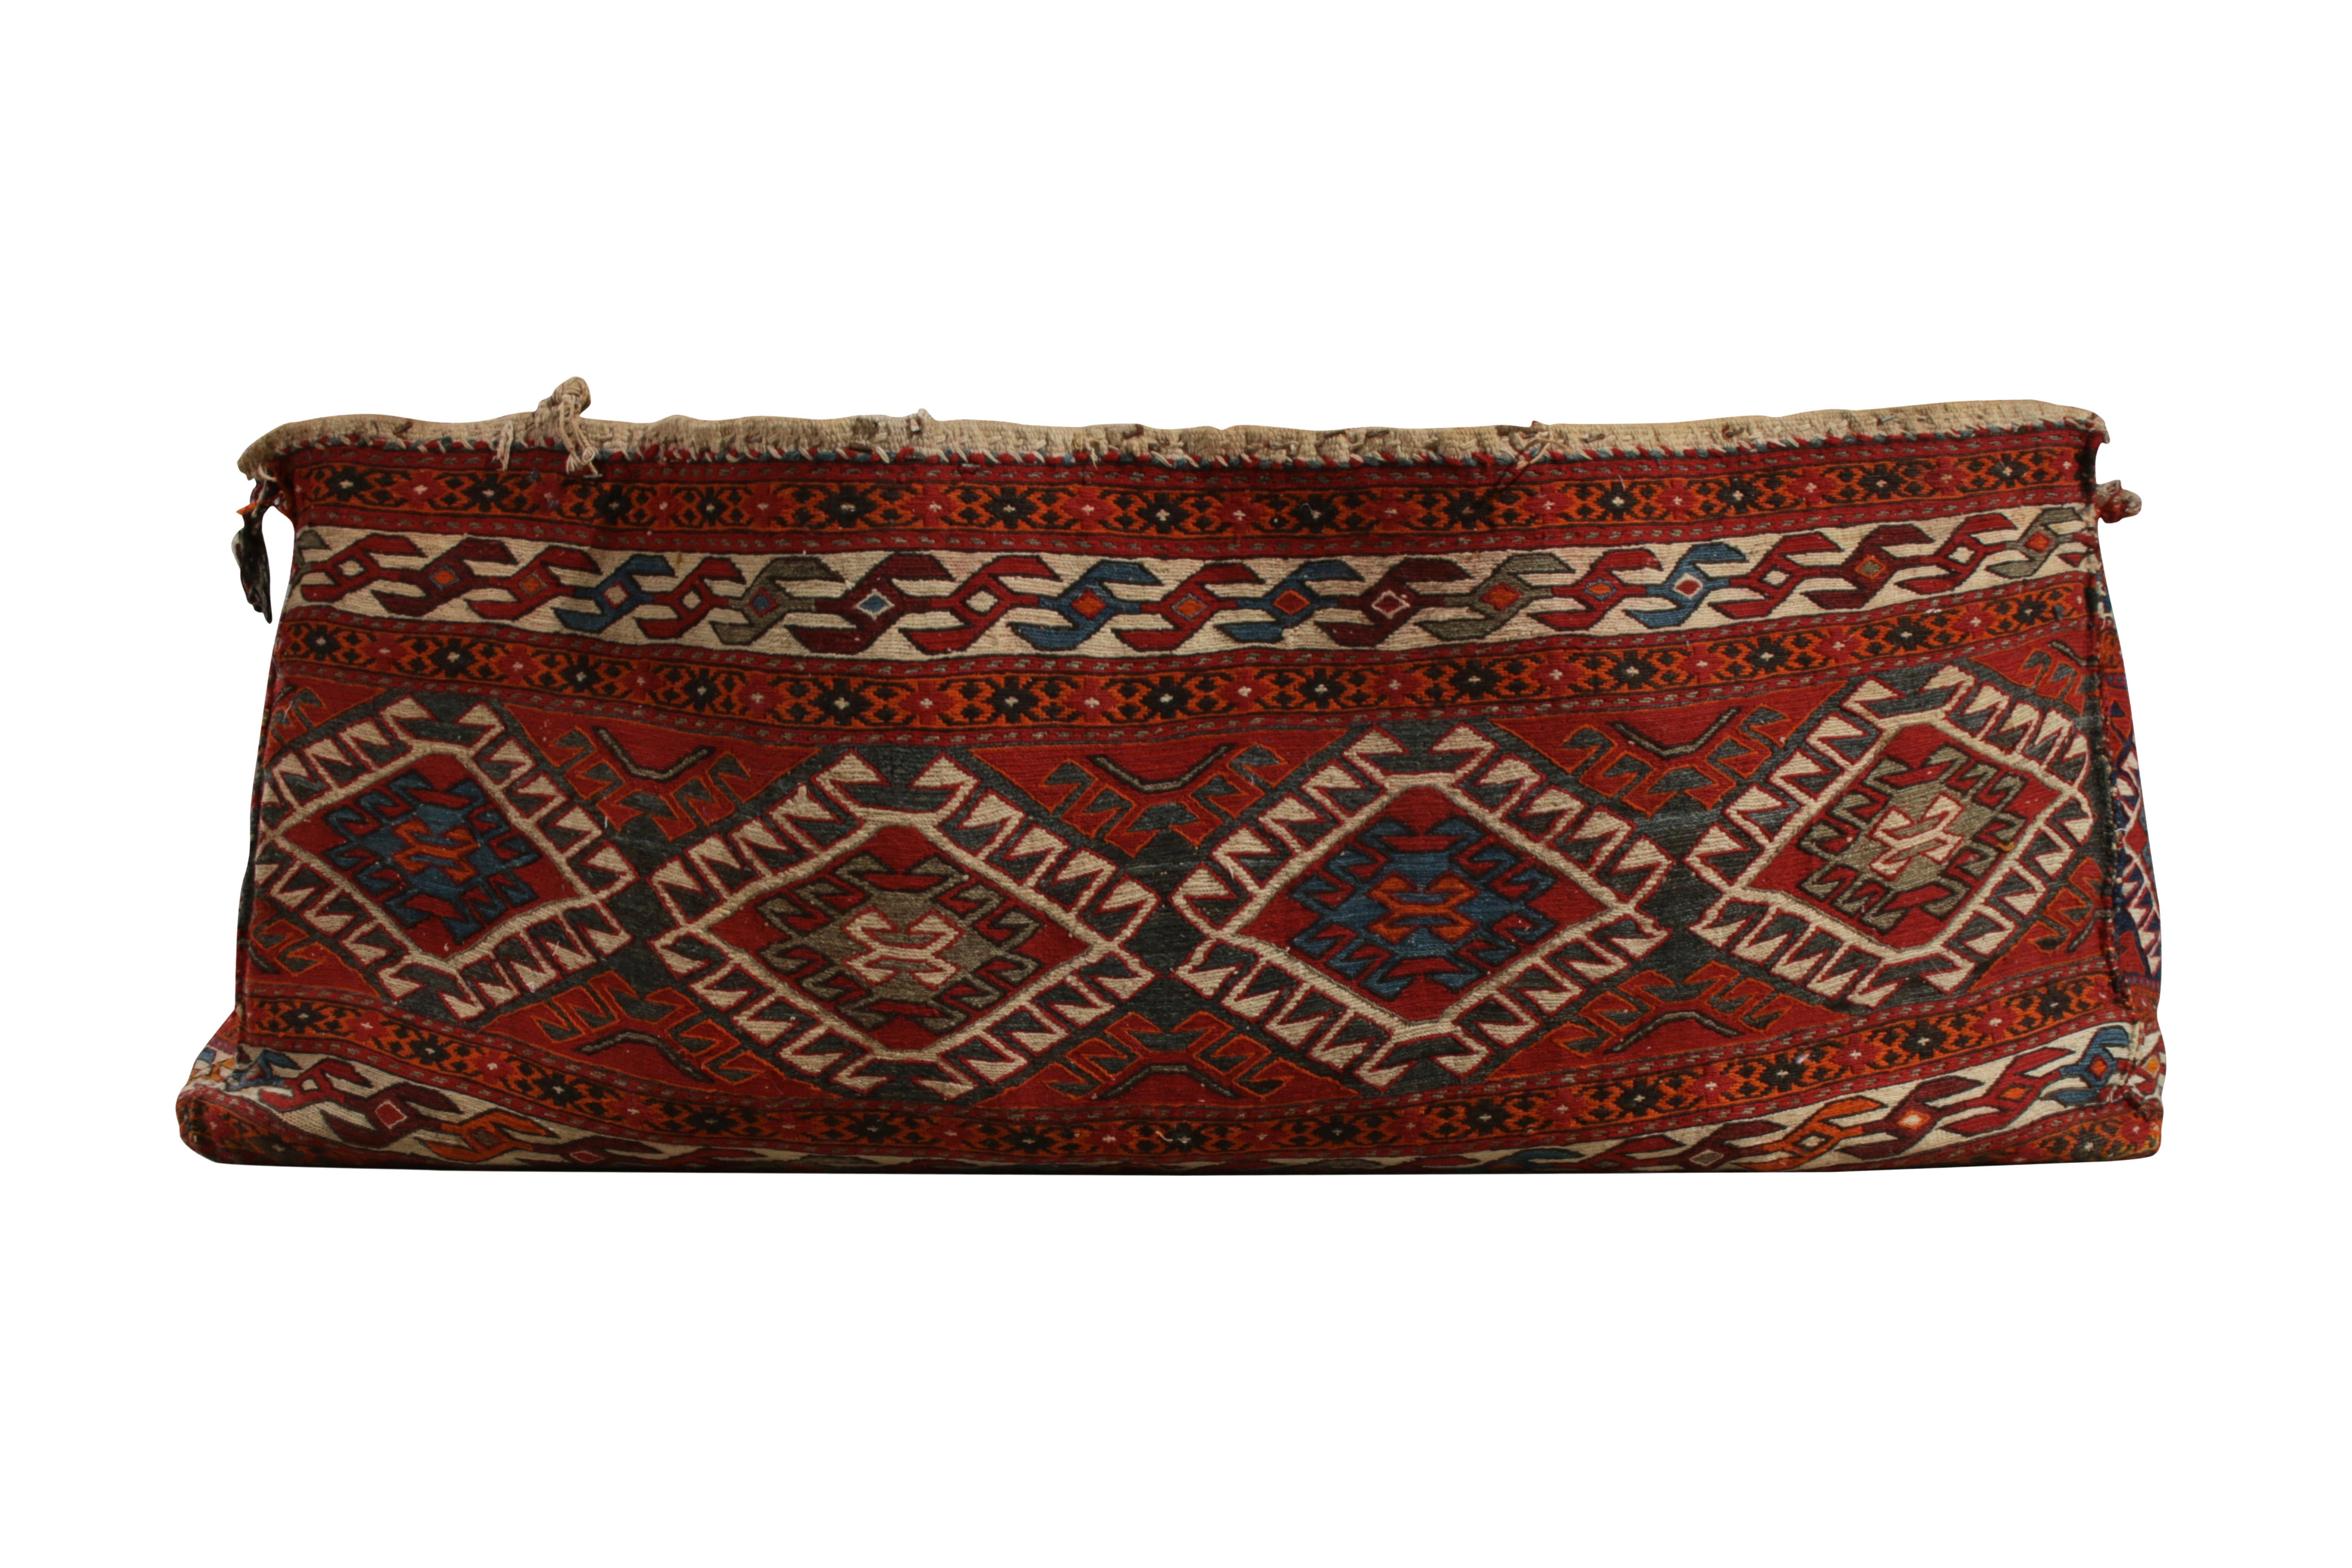 Un sac à tissage plat des années 1940 en provenance de Perse, qui vient de rejoindre la collection Antique & Vintage de Rug & Kilim. Tissé à la main en laine avec des fils de qualité fine dans le sac d'origine (parfois appelé 